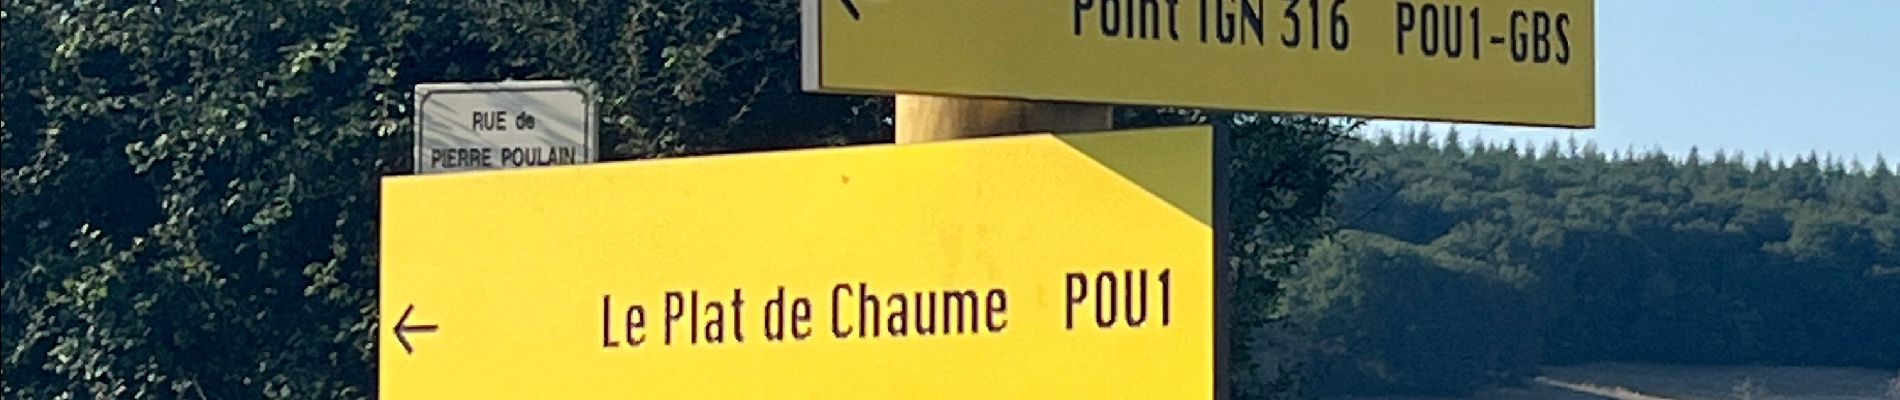 Point d'intérêt Pouilloux - Étang de Pierre Poulain - Photo